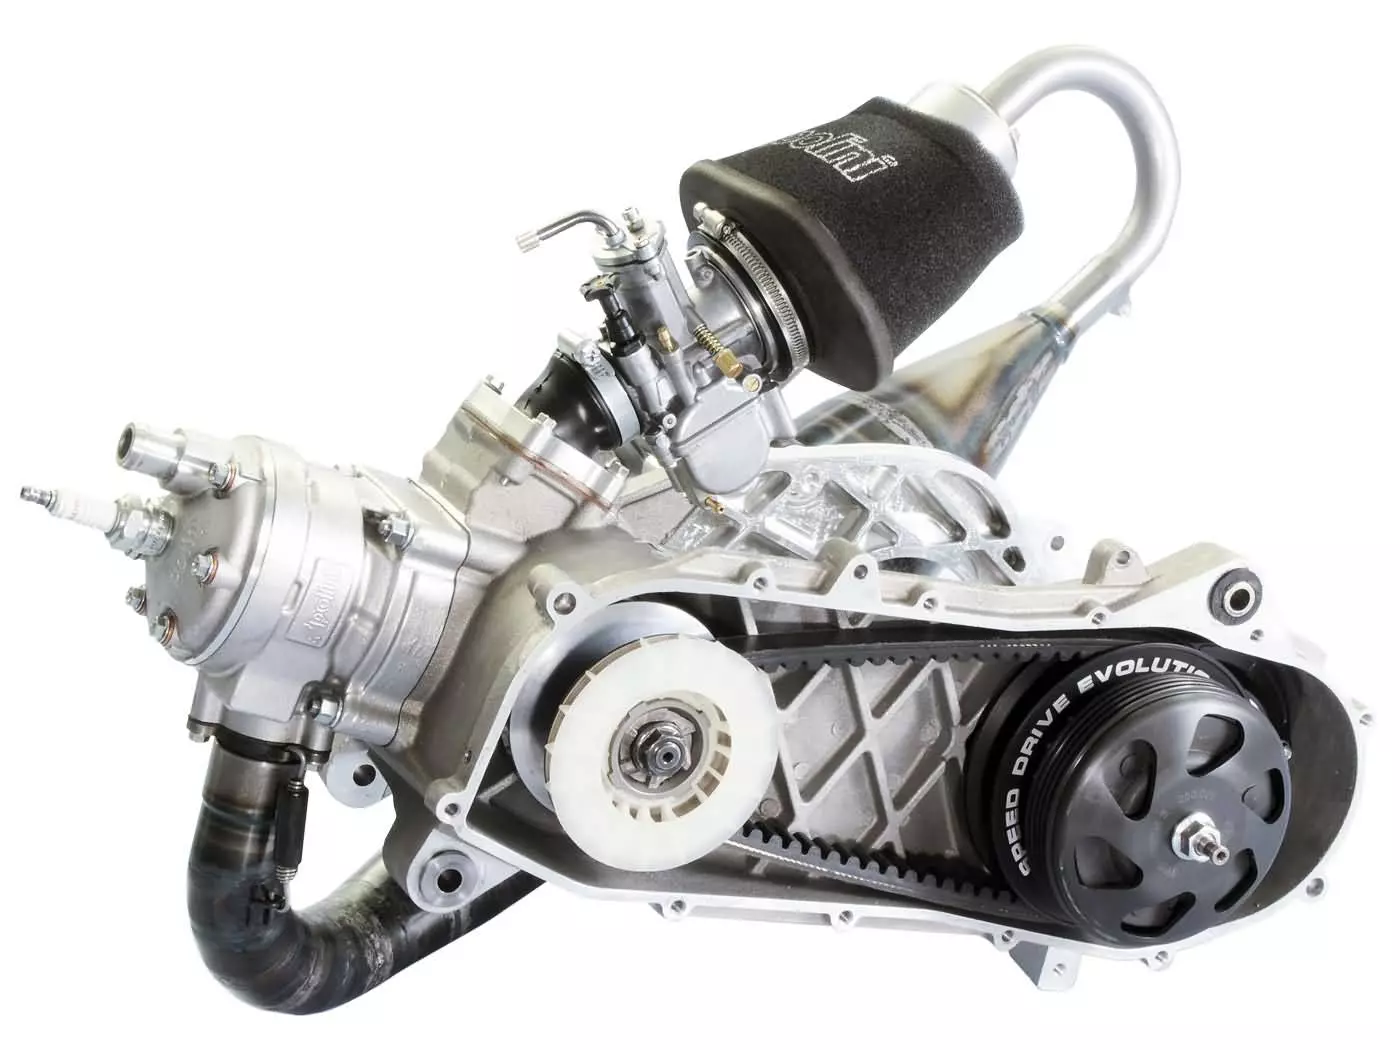 Rennmotor Polini Evolution P.R.E. 70cc 47,6mm voor Piaggio Zip SP, Zip 2 SP met Schijfrem